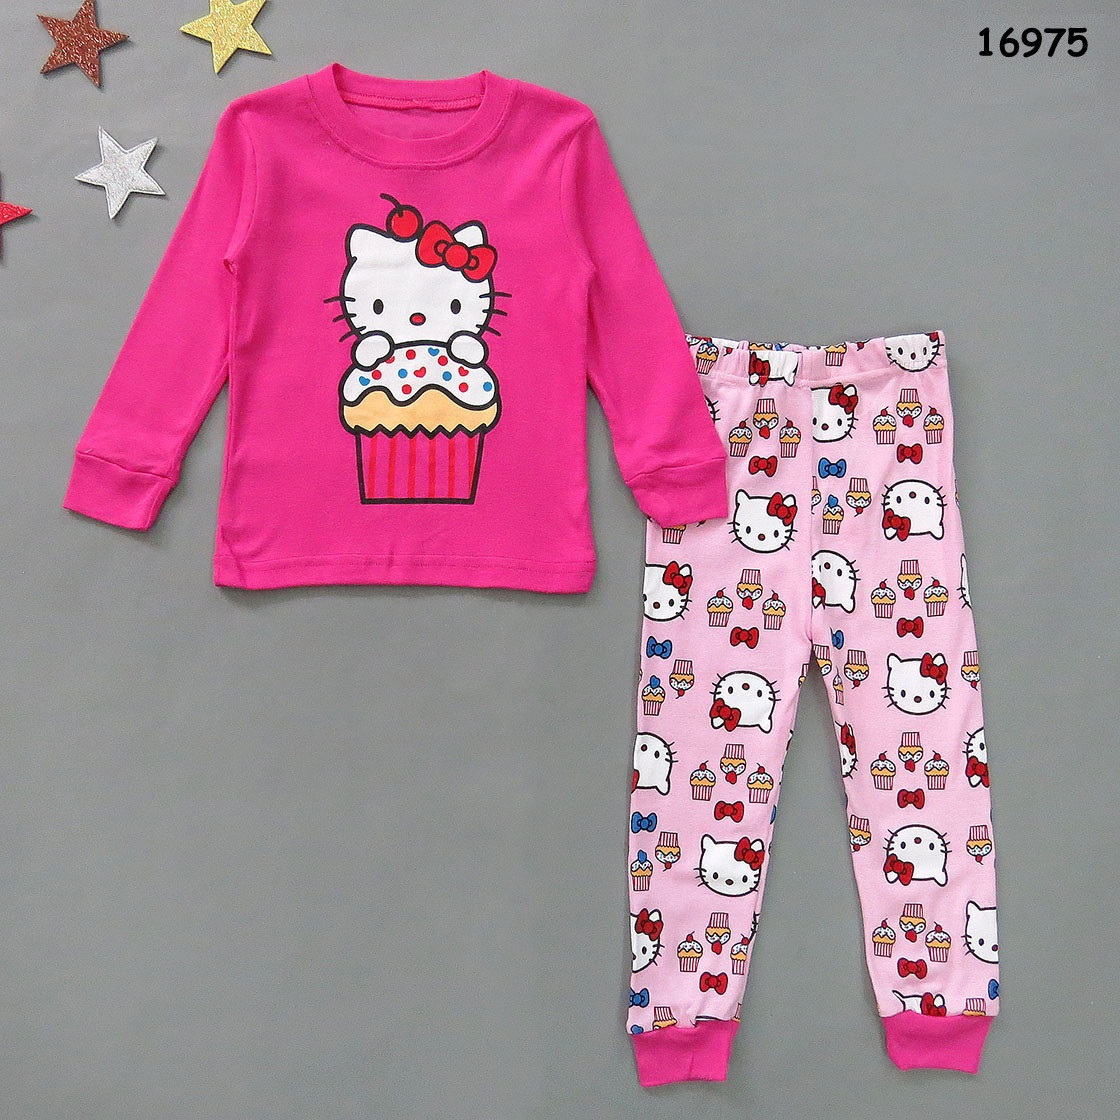 Пижама Hello Kitty для девочки.: продажа, цена в Виннице ...